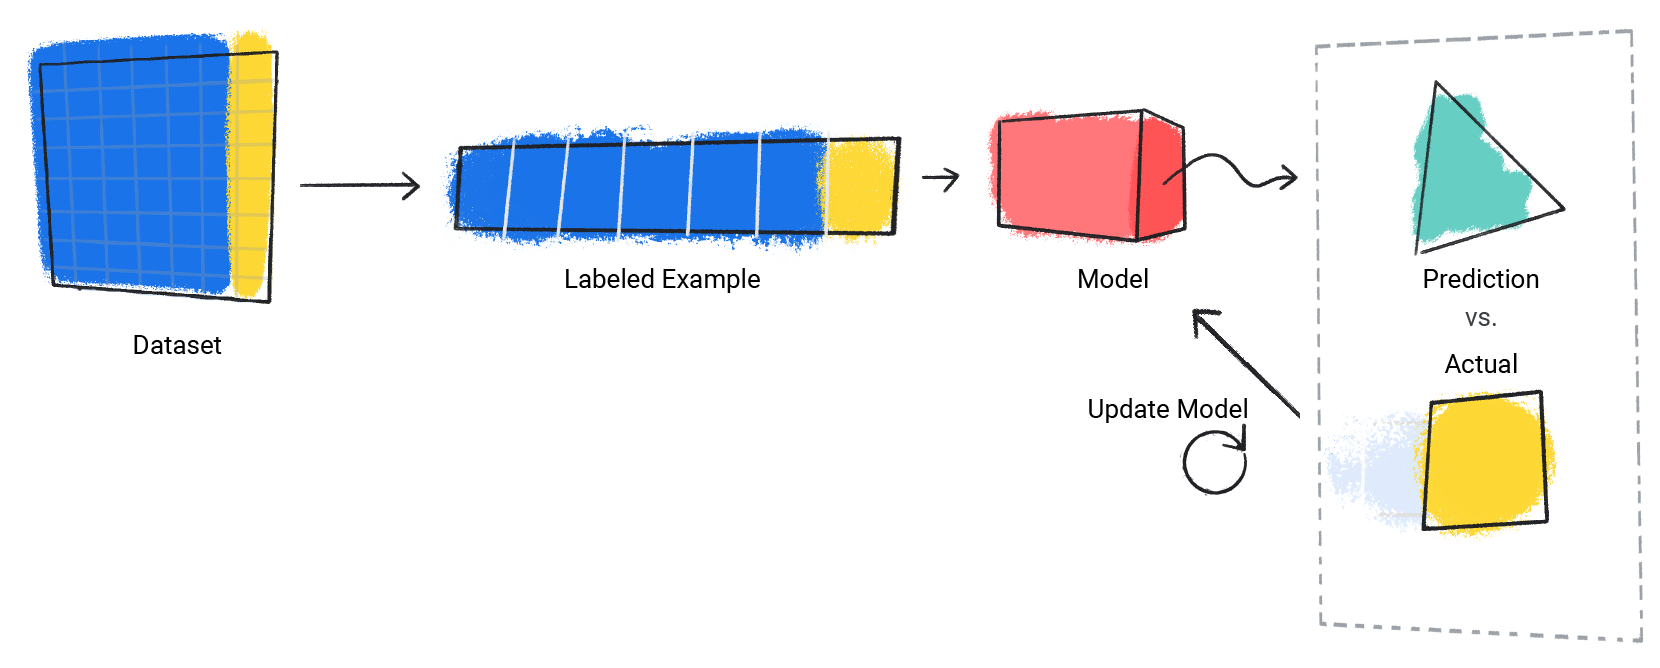 صورة نموذج يكرر عملية التنبؤ مقابل القيمة الفعلية.